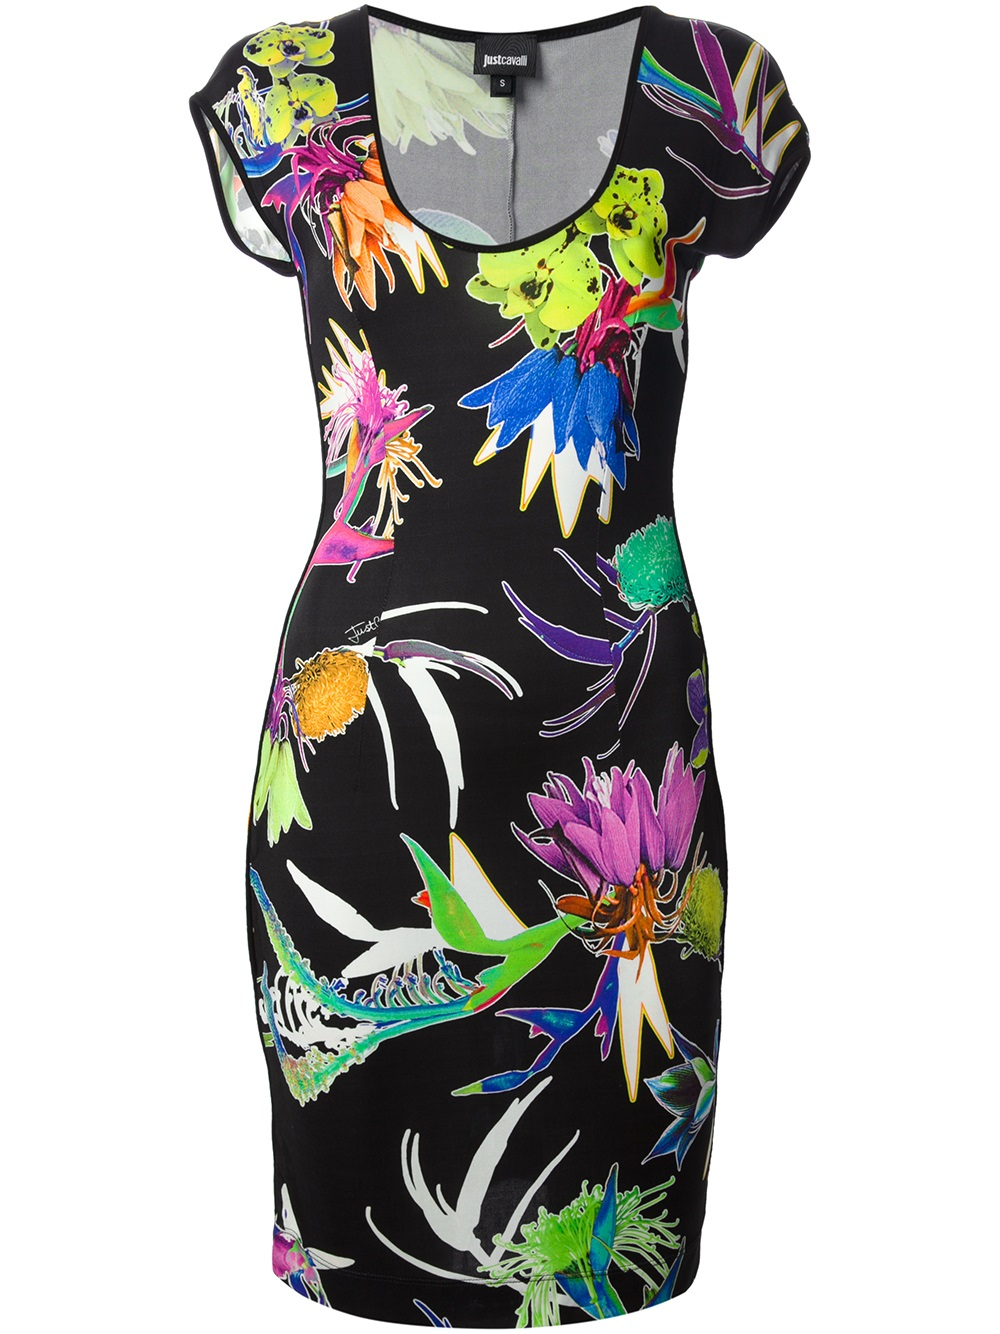 Lyst - Just cavalli Floral Print Dress in Black